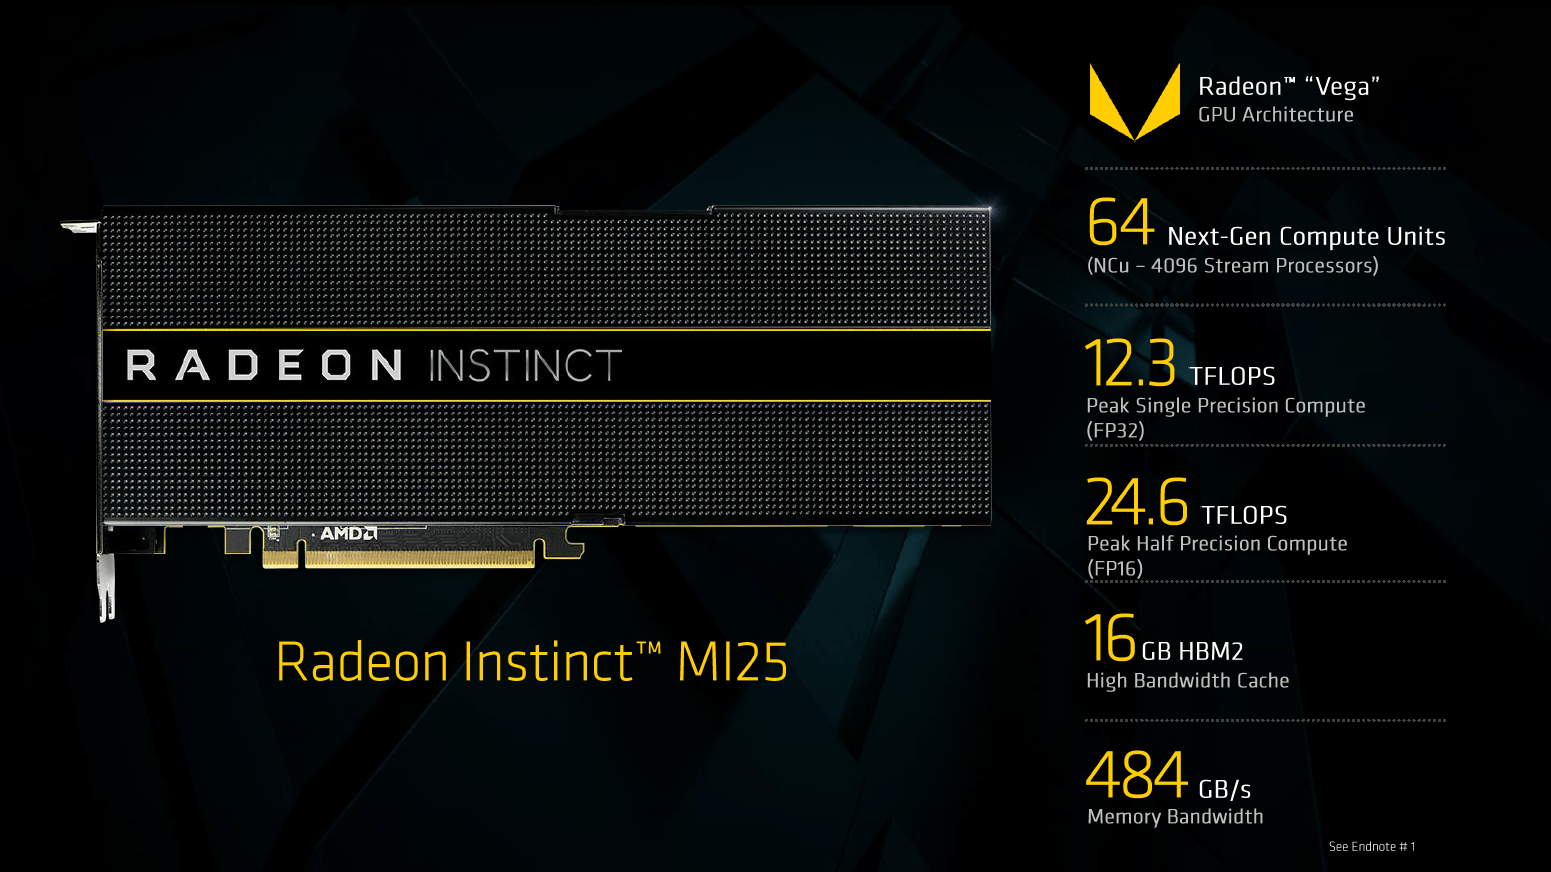 Vega mimarisi Nvidia GP100 GPU'sundan daha iyi